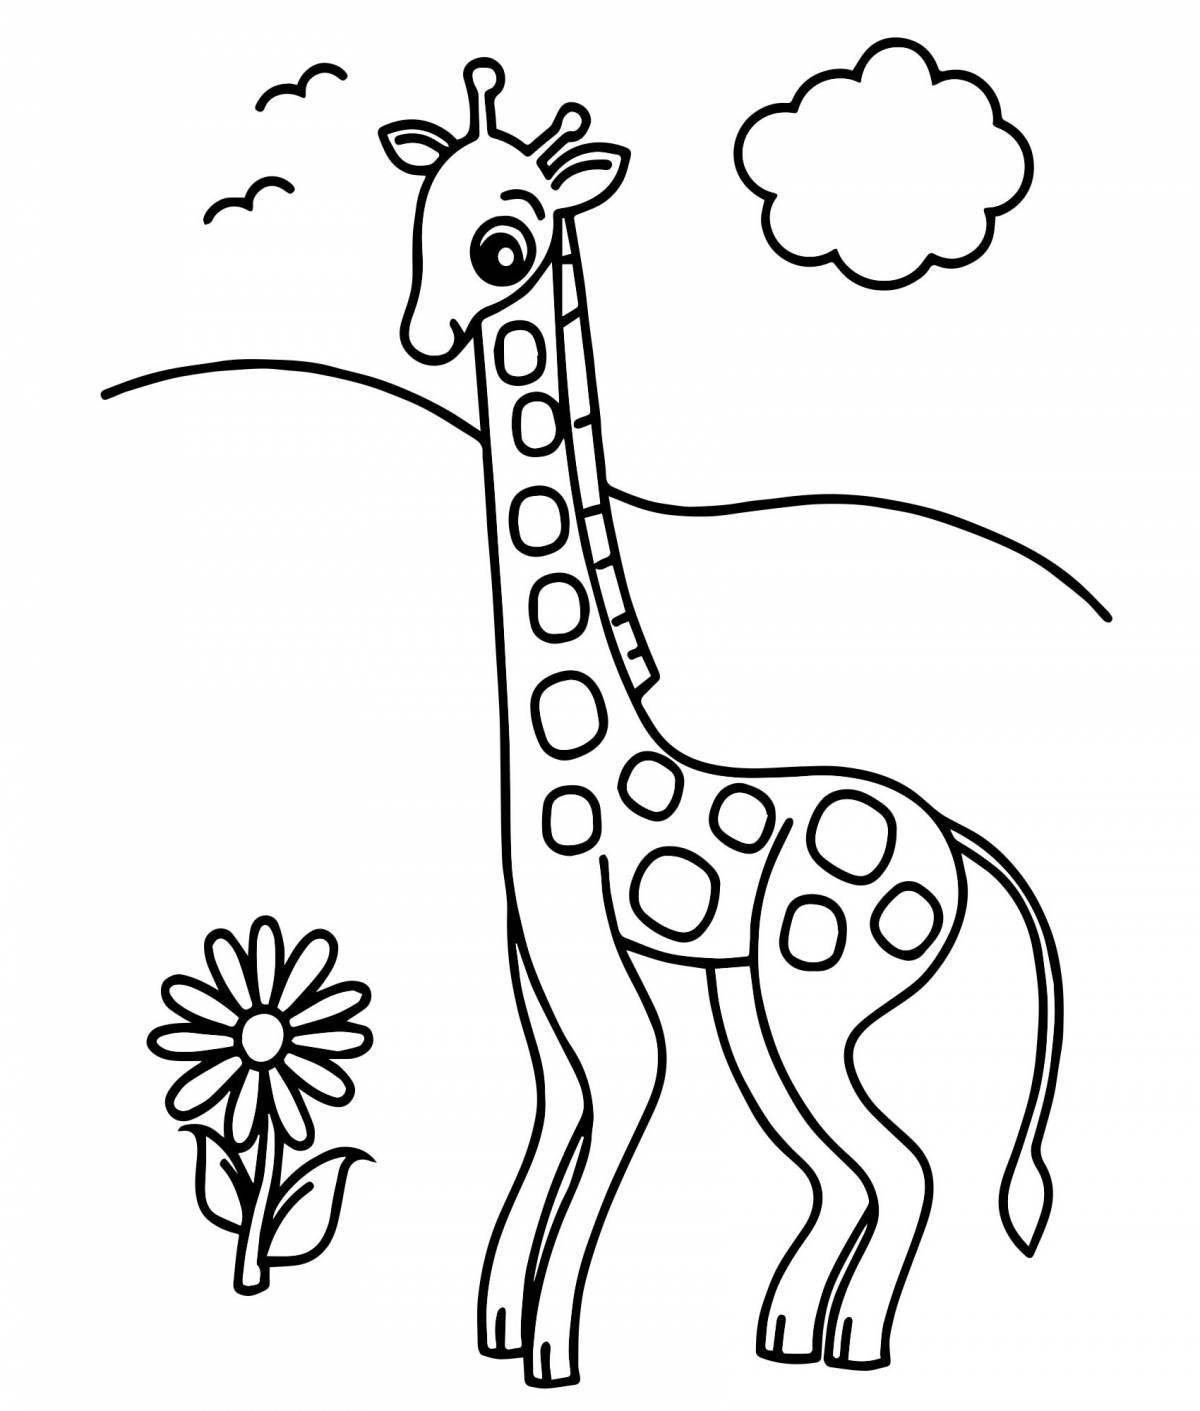 Удивительная раскраска жирафа для детей 3-4 лет